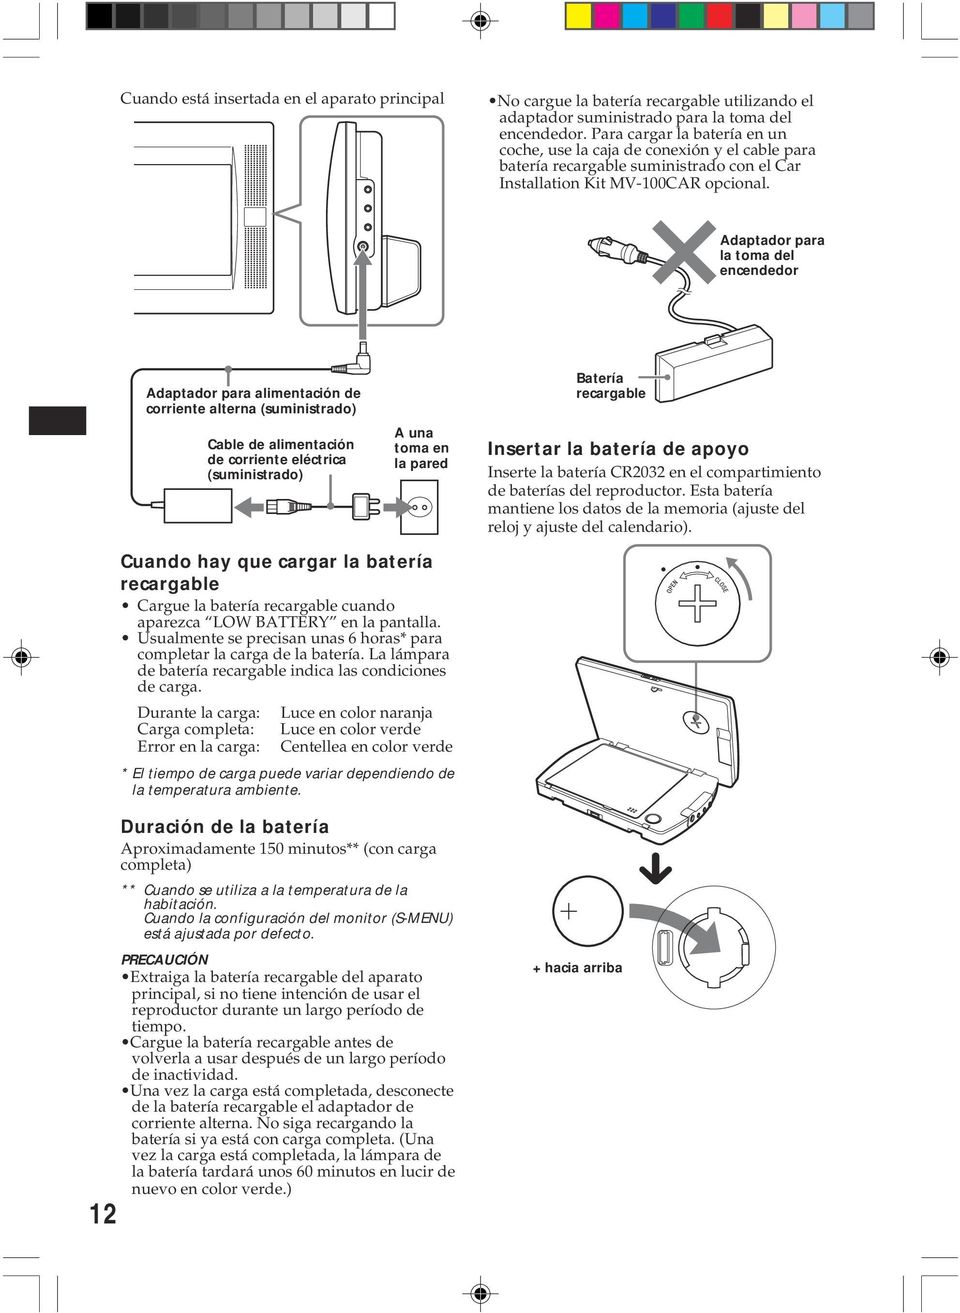 Adaptador para la toma del encendedor Adaptador para alimentación de corriente alterna (suministrado) Cable de alimentación de corriente eléctrica (suministrado) A una toma en la pared Batería